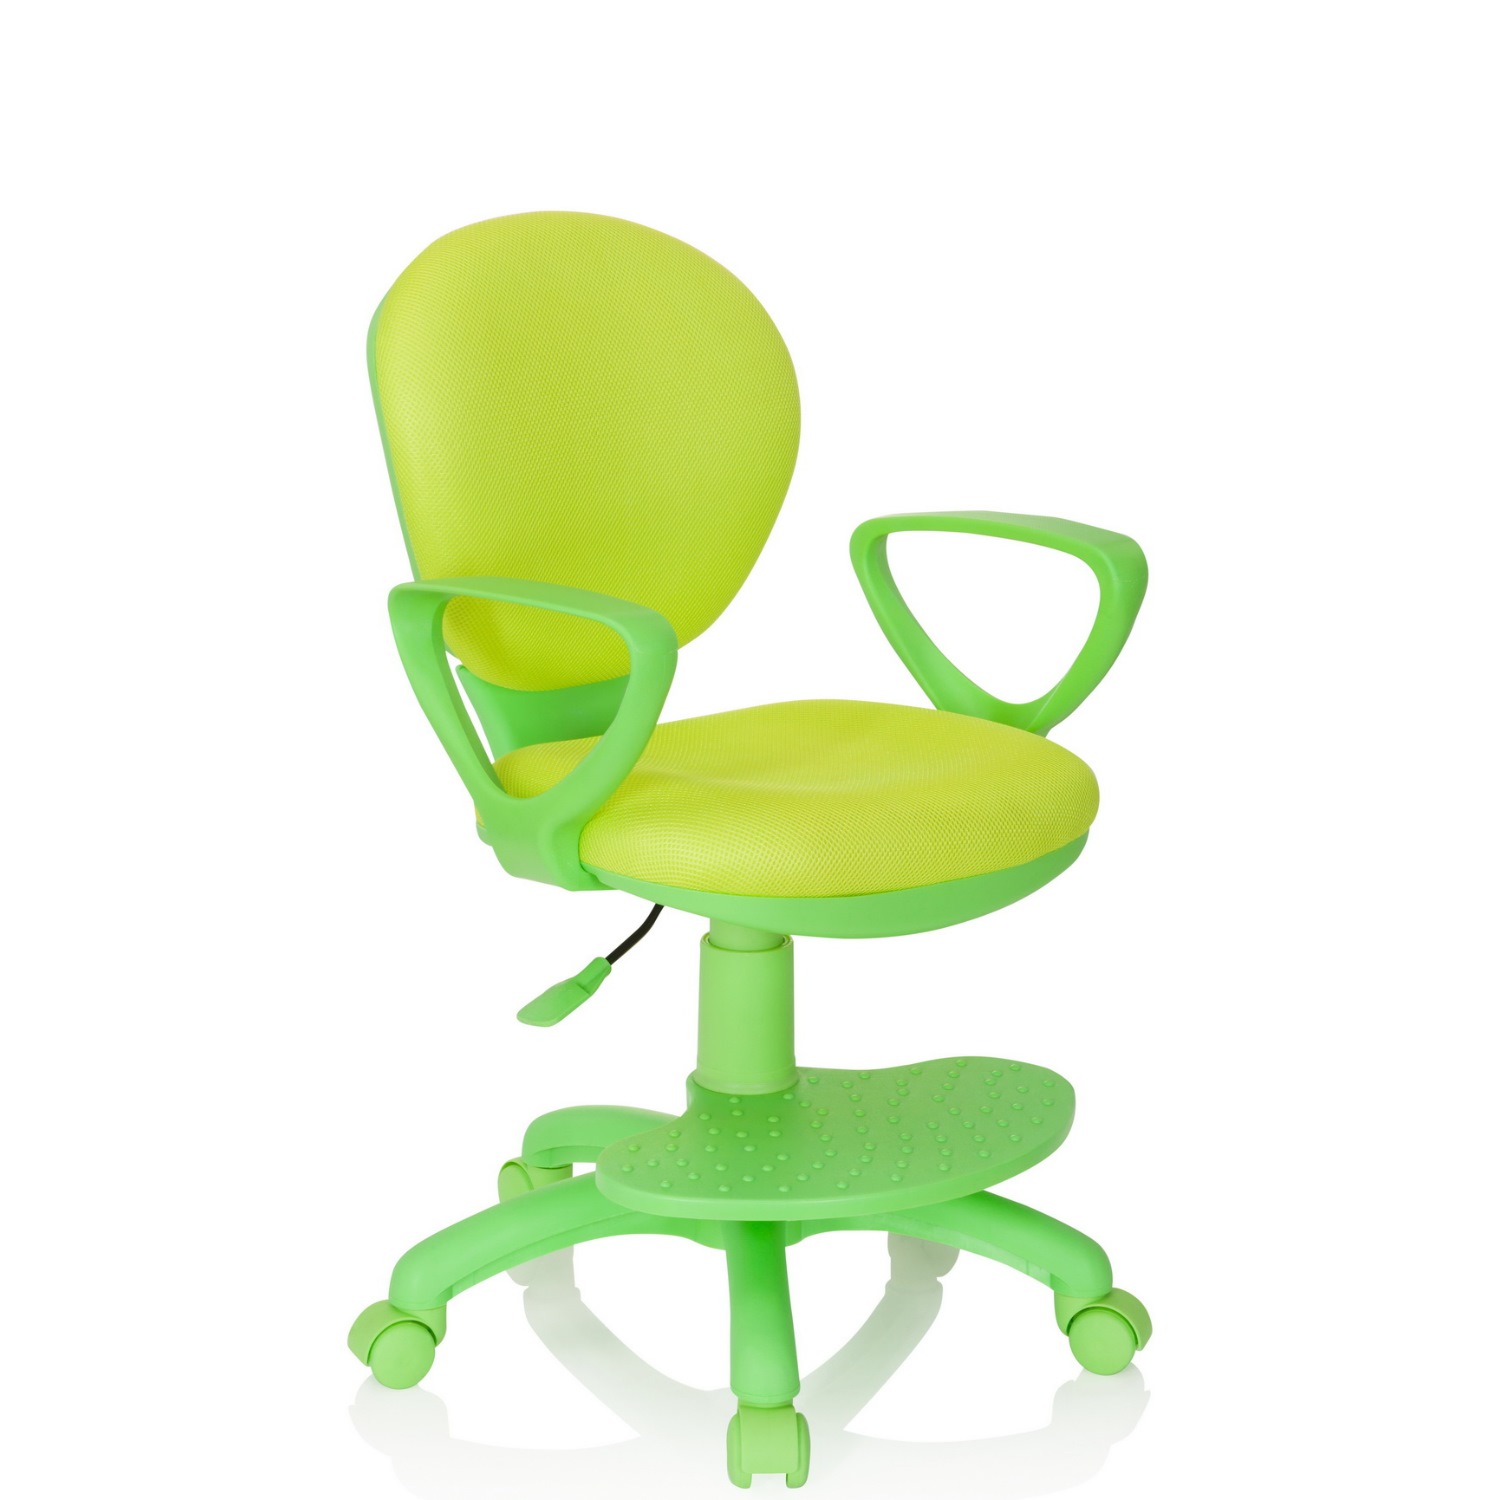 Büromöbel preiswert und schnell Schreibtischstuhl PARADIGM grün Stoff / Büroland Kinderstuhl 